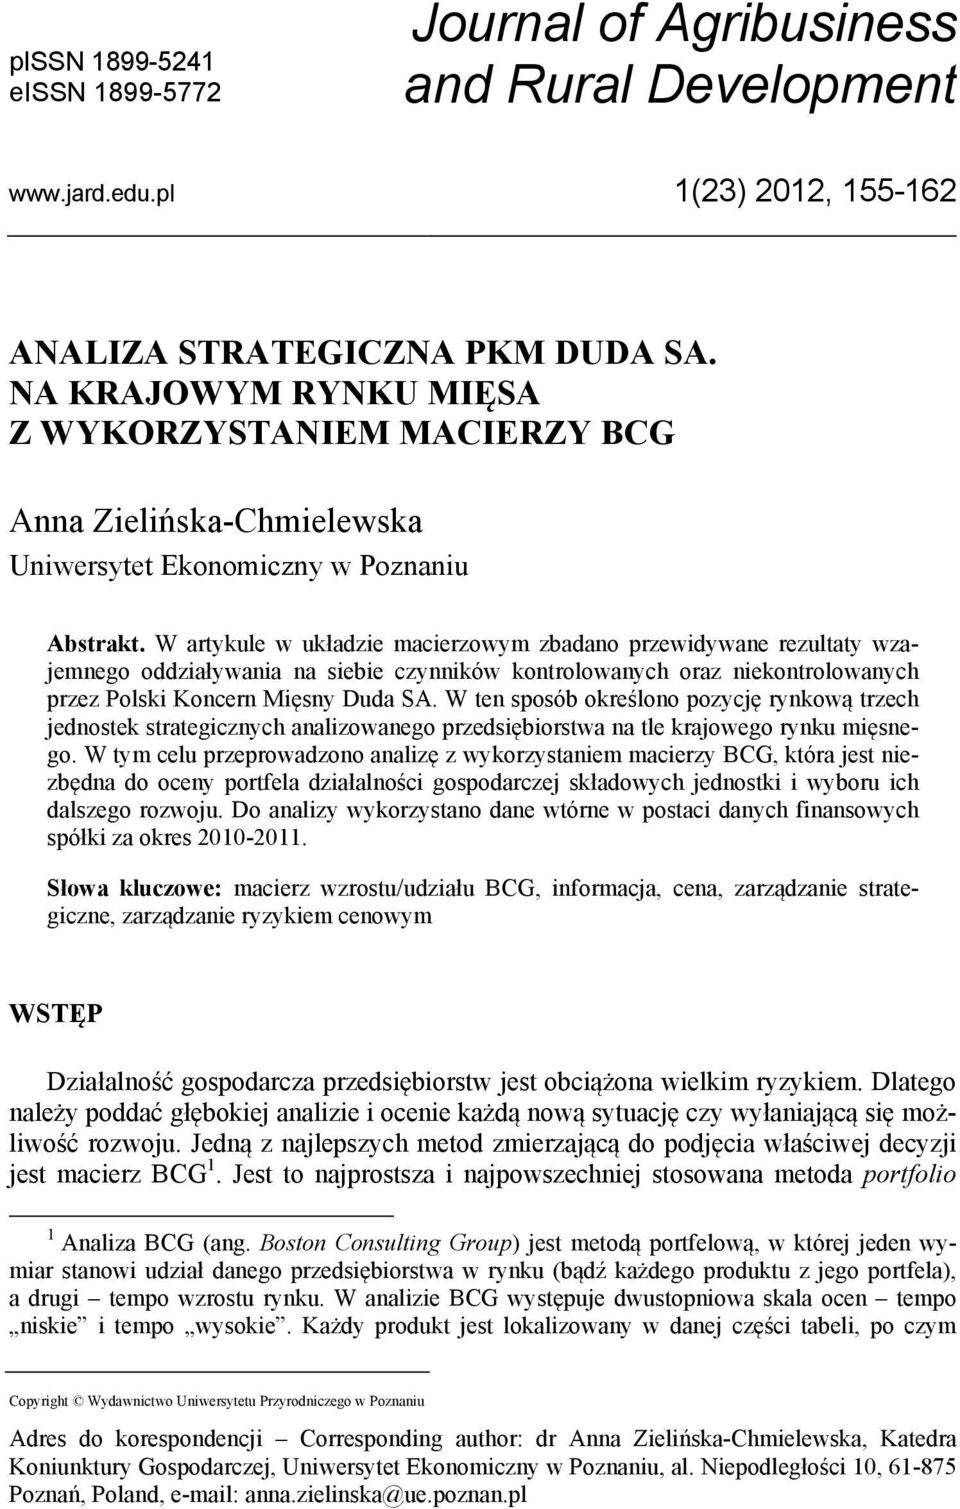 W artykule w układzie macierzowym zbadano przewidywane rezultaty wzajemnego oddziaływania na siebie czynników kontrolowanych oraz niekontrolowanych przez Polski Koncern Mięsny Duda SA.